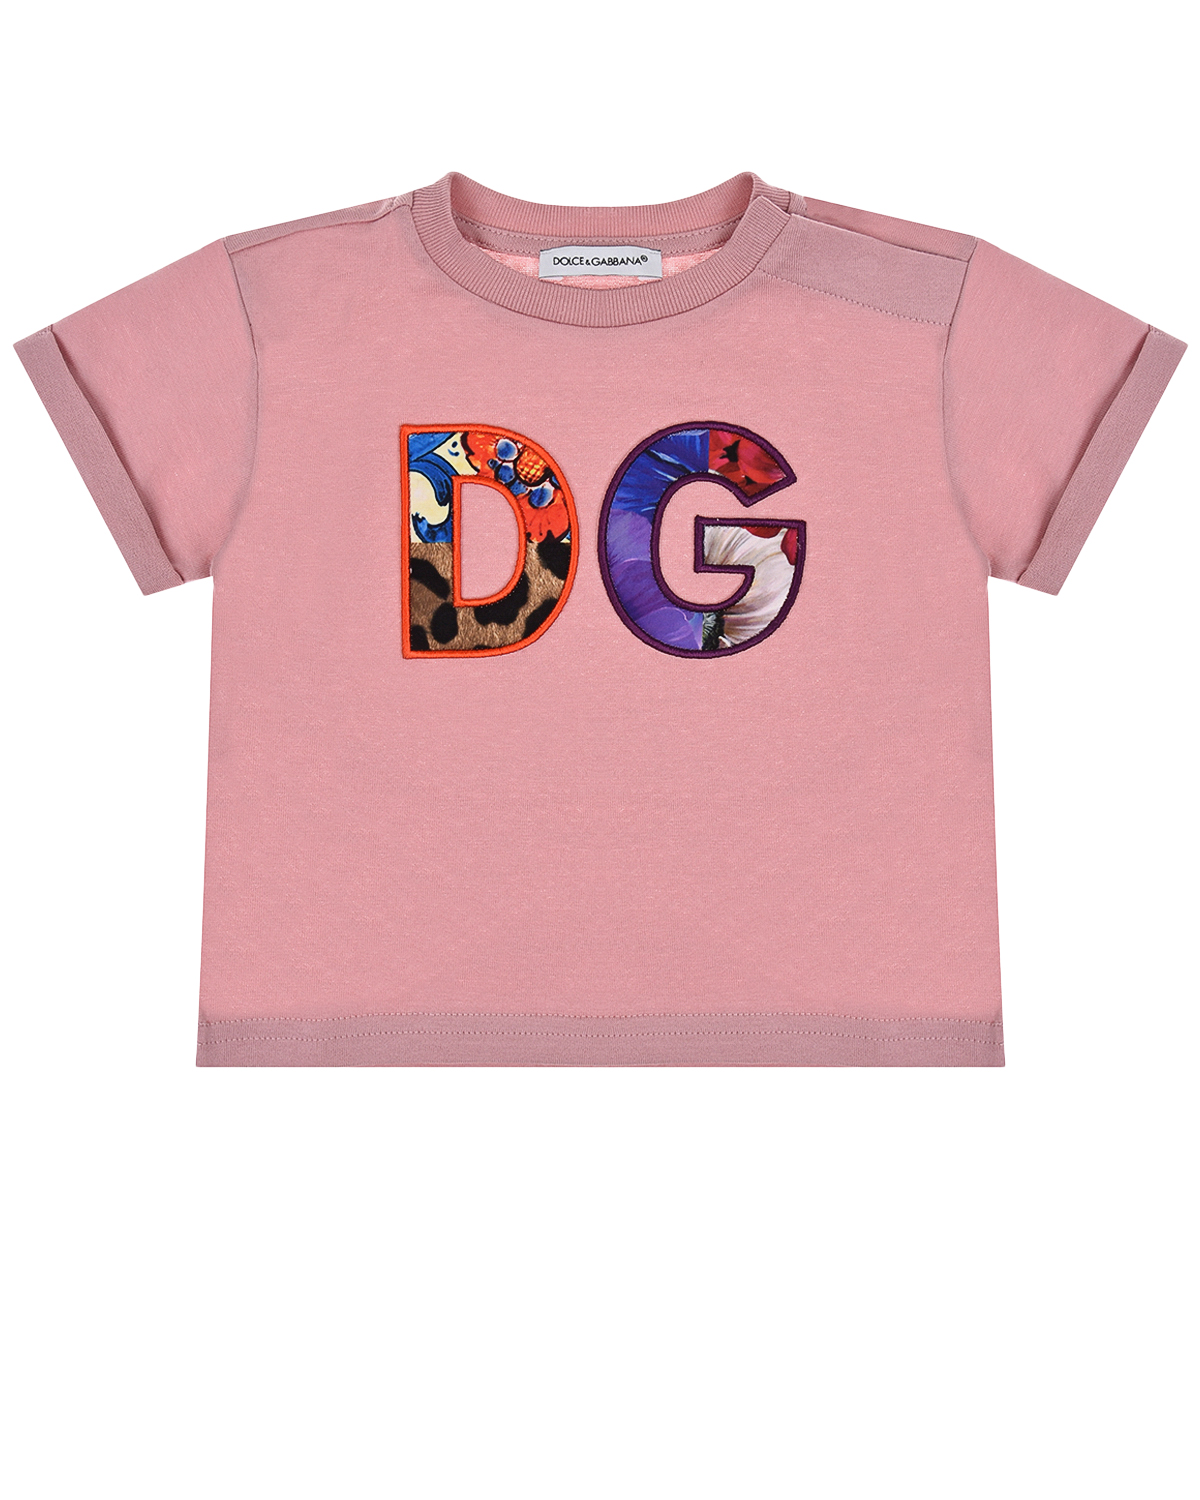 Купить Розовая футболка с разноцветным логотипом Dolce&Gabbana детская, Розовый, 100%хлопок, 80%хлопок+20%вискоза